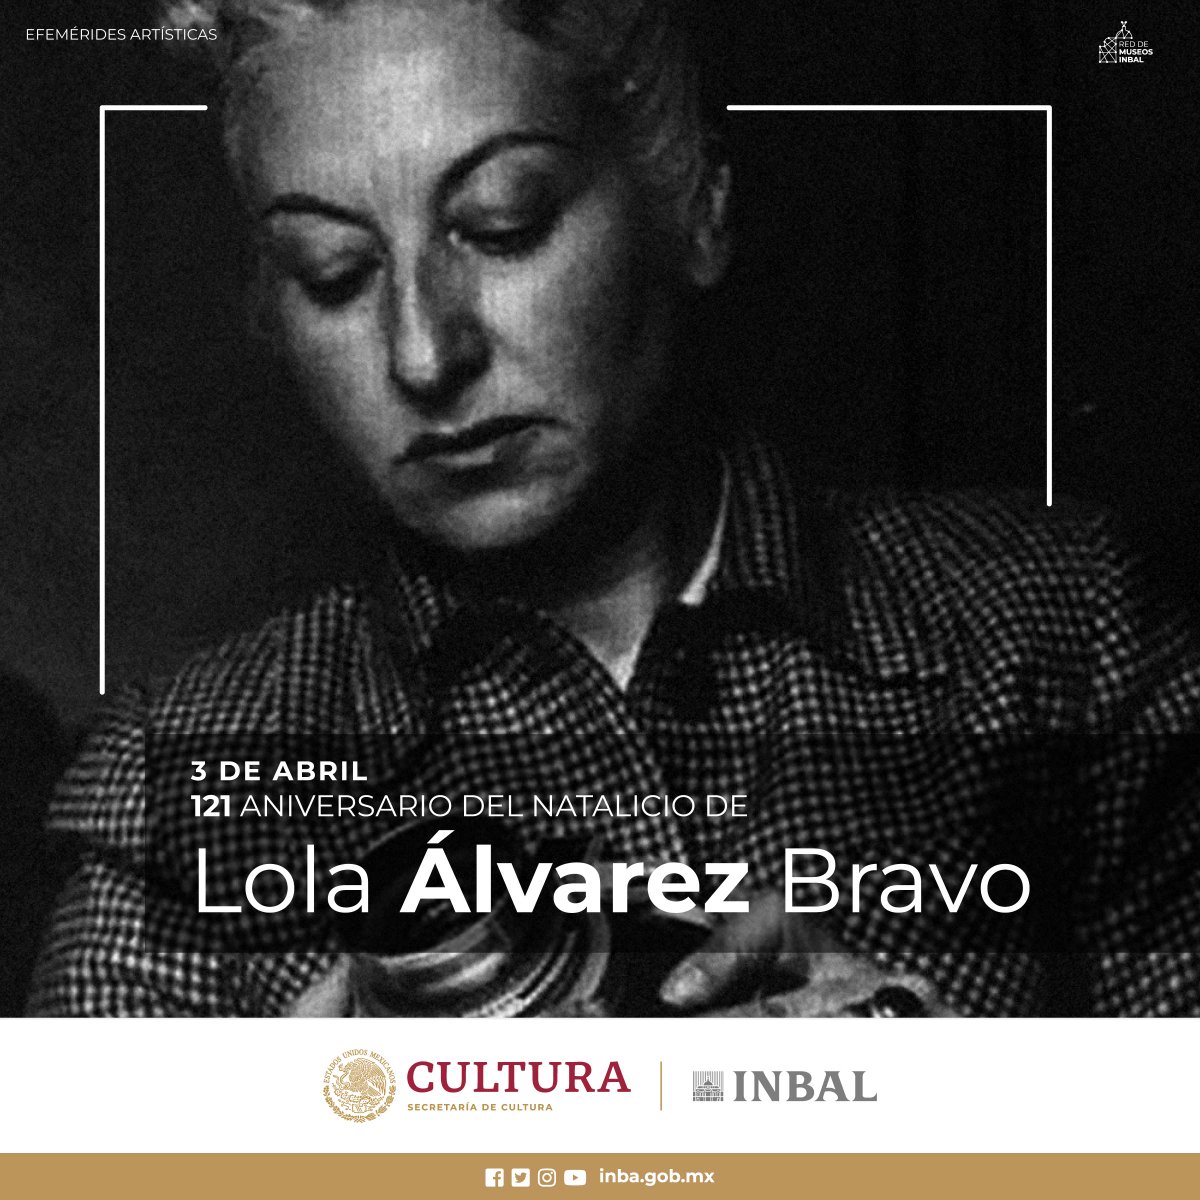 Hoy recordamos a la fotógrafa mexicana Lola Álvarez Bravo.  Se desempeñó como reportera gráfica, fotógrafa comercial y documental, retratista profesional y artista plástica. Destacan sus imágenes documentales de la vida cotidiana, sus fotomontajes y fotomural.
#redmuseosINBAL